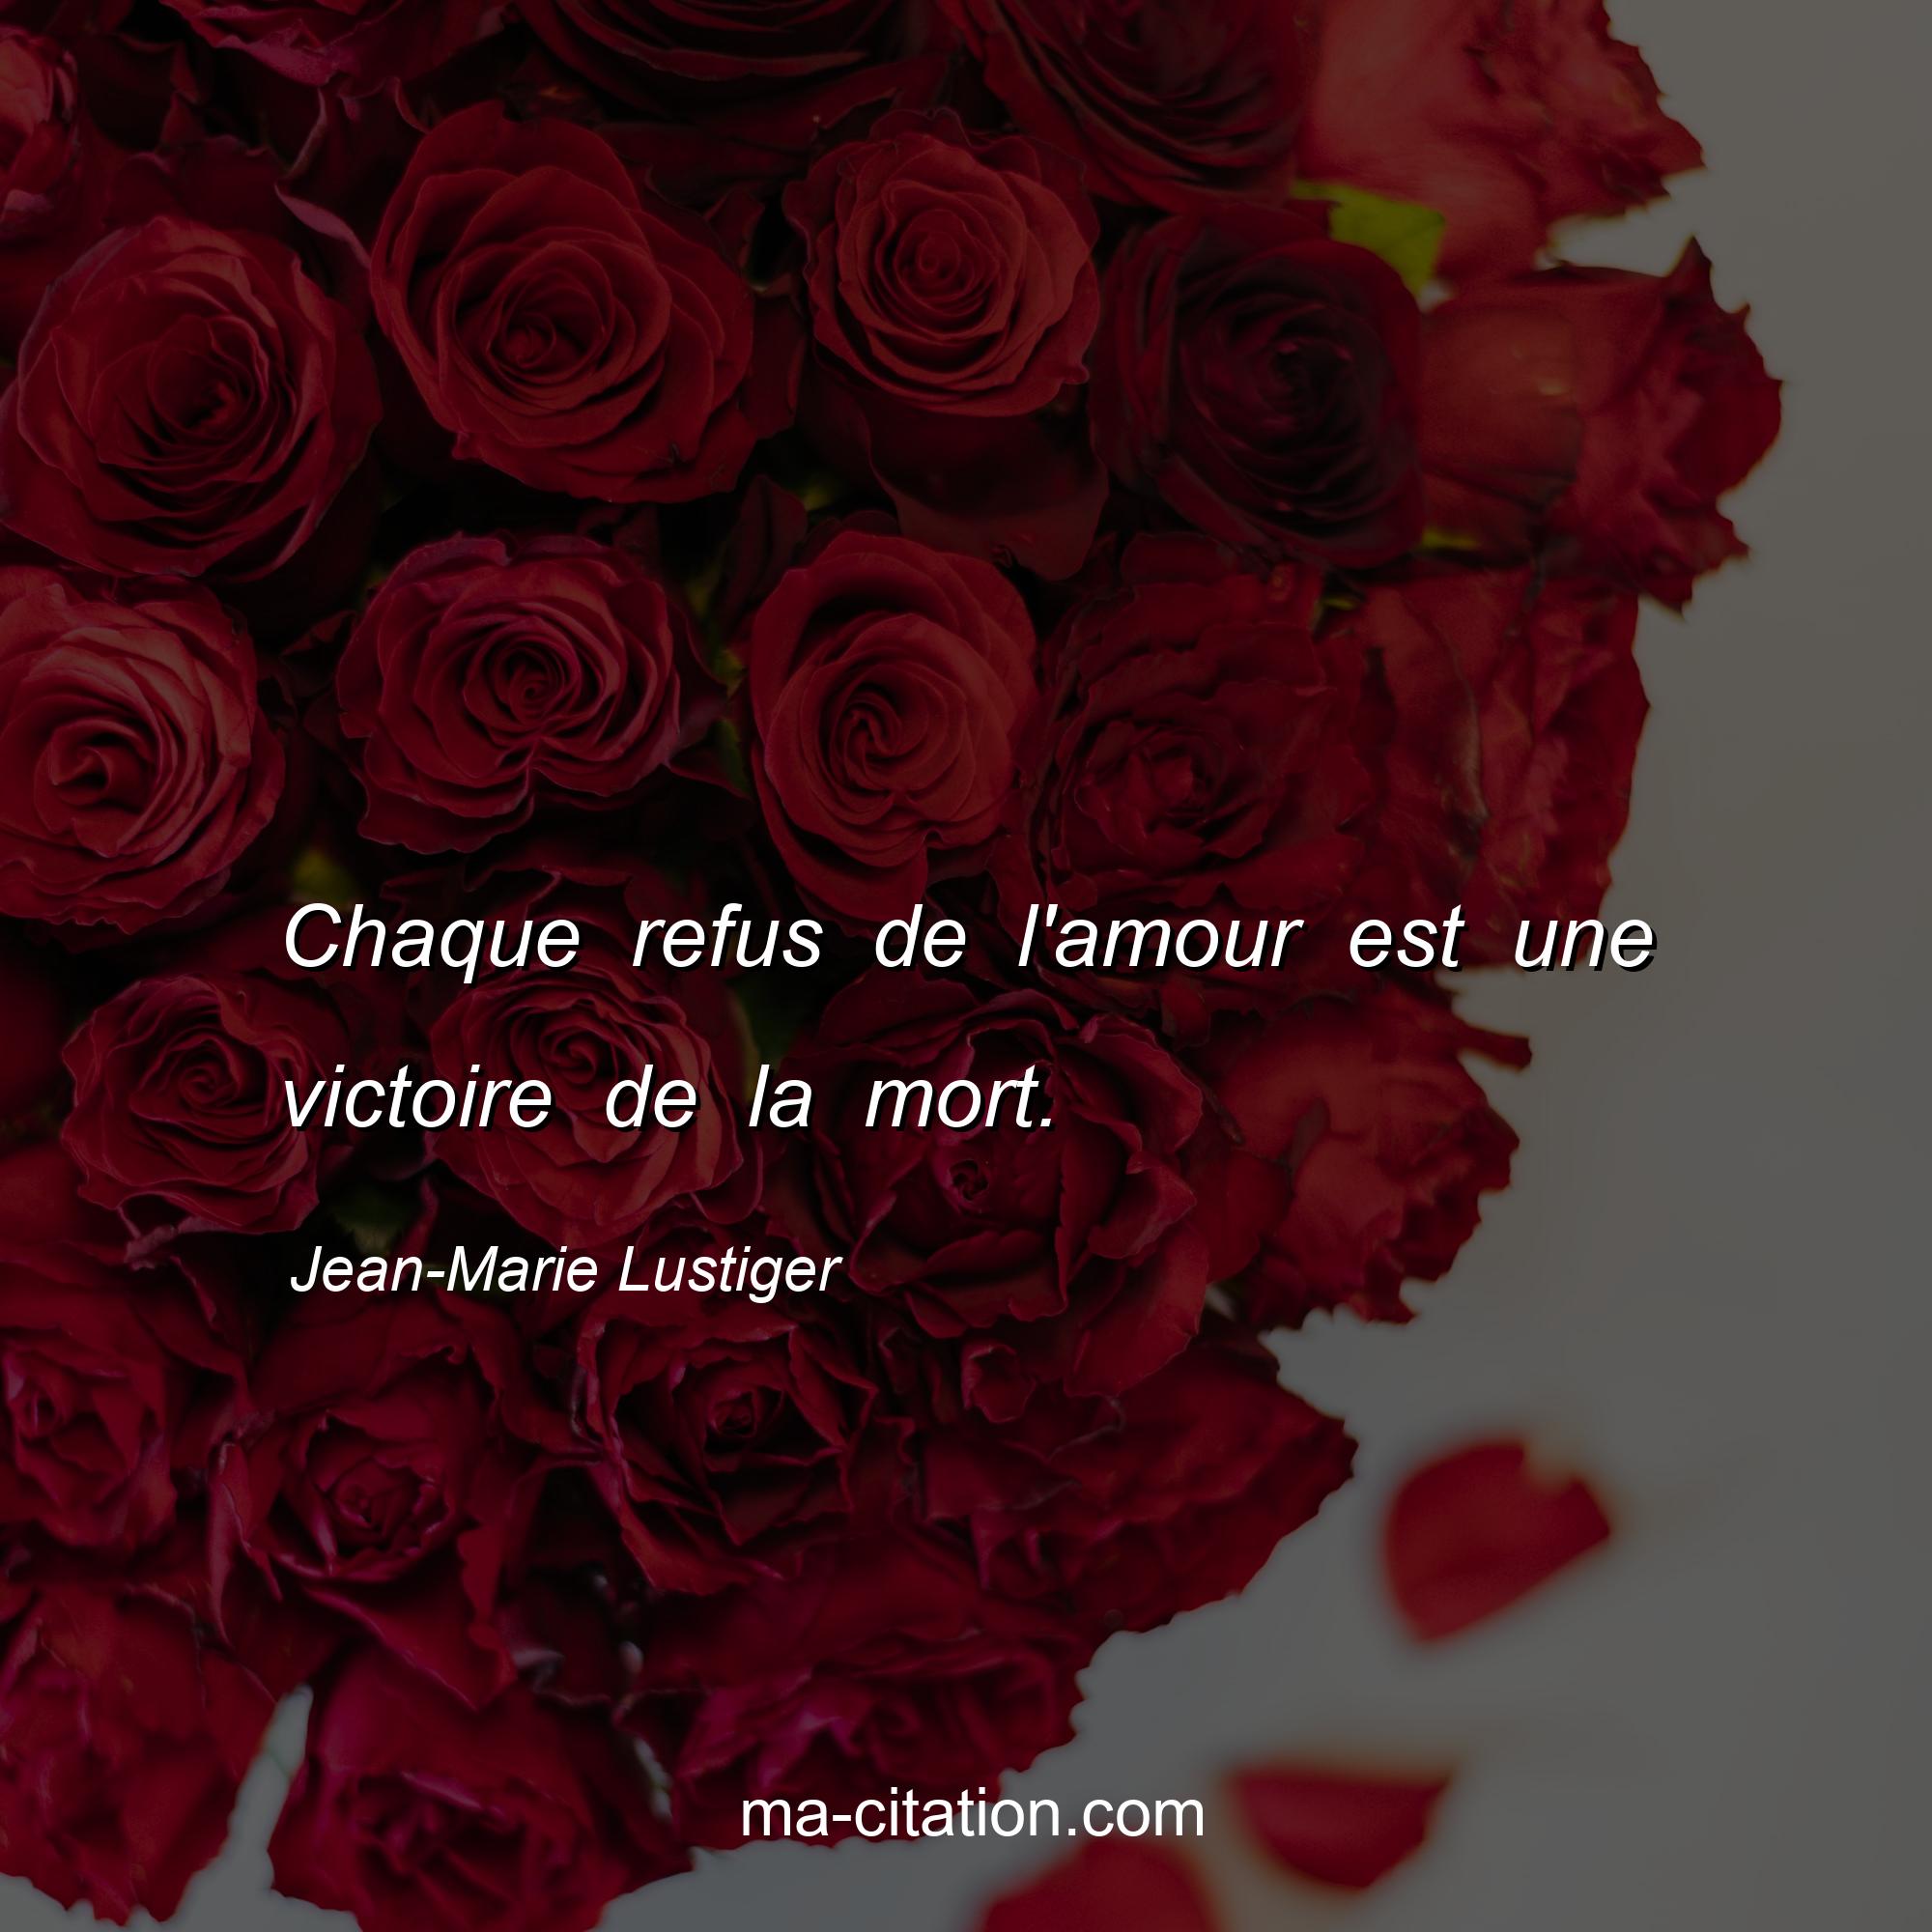 Jean-Marie Lustiger : Chaque refus de l'amour est une victoire de la mort.